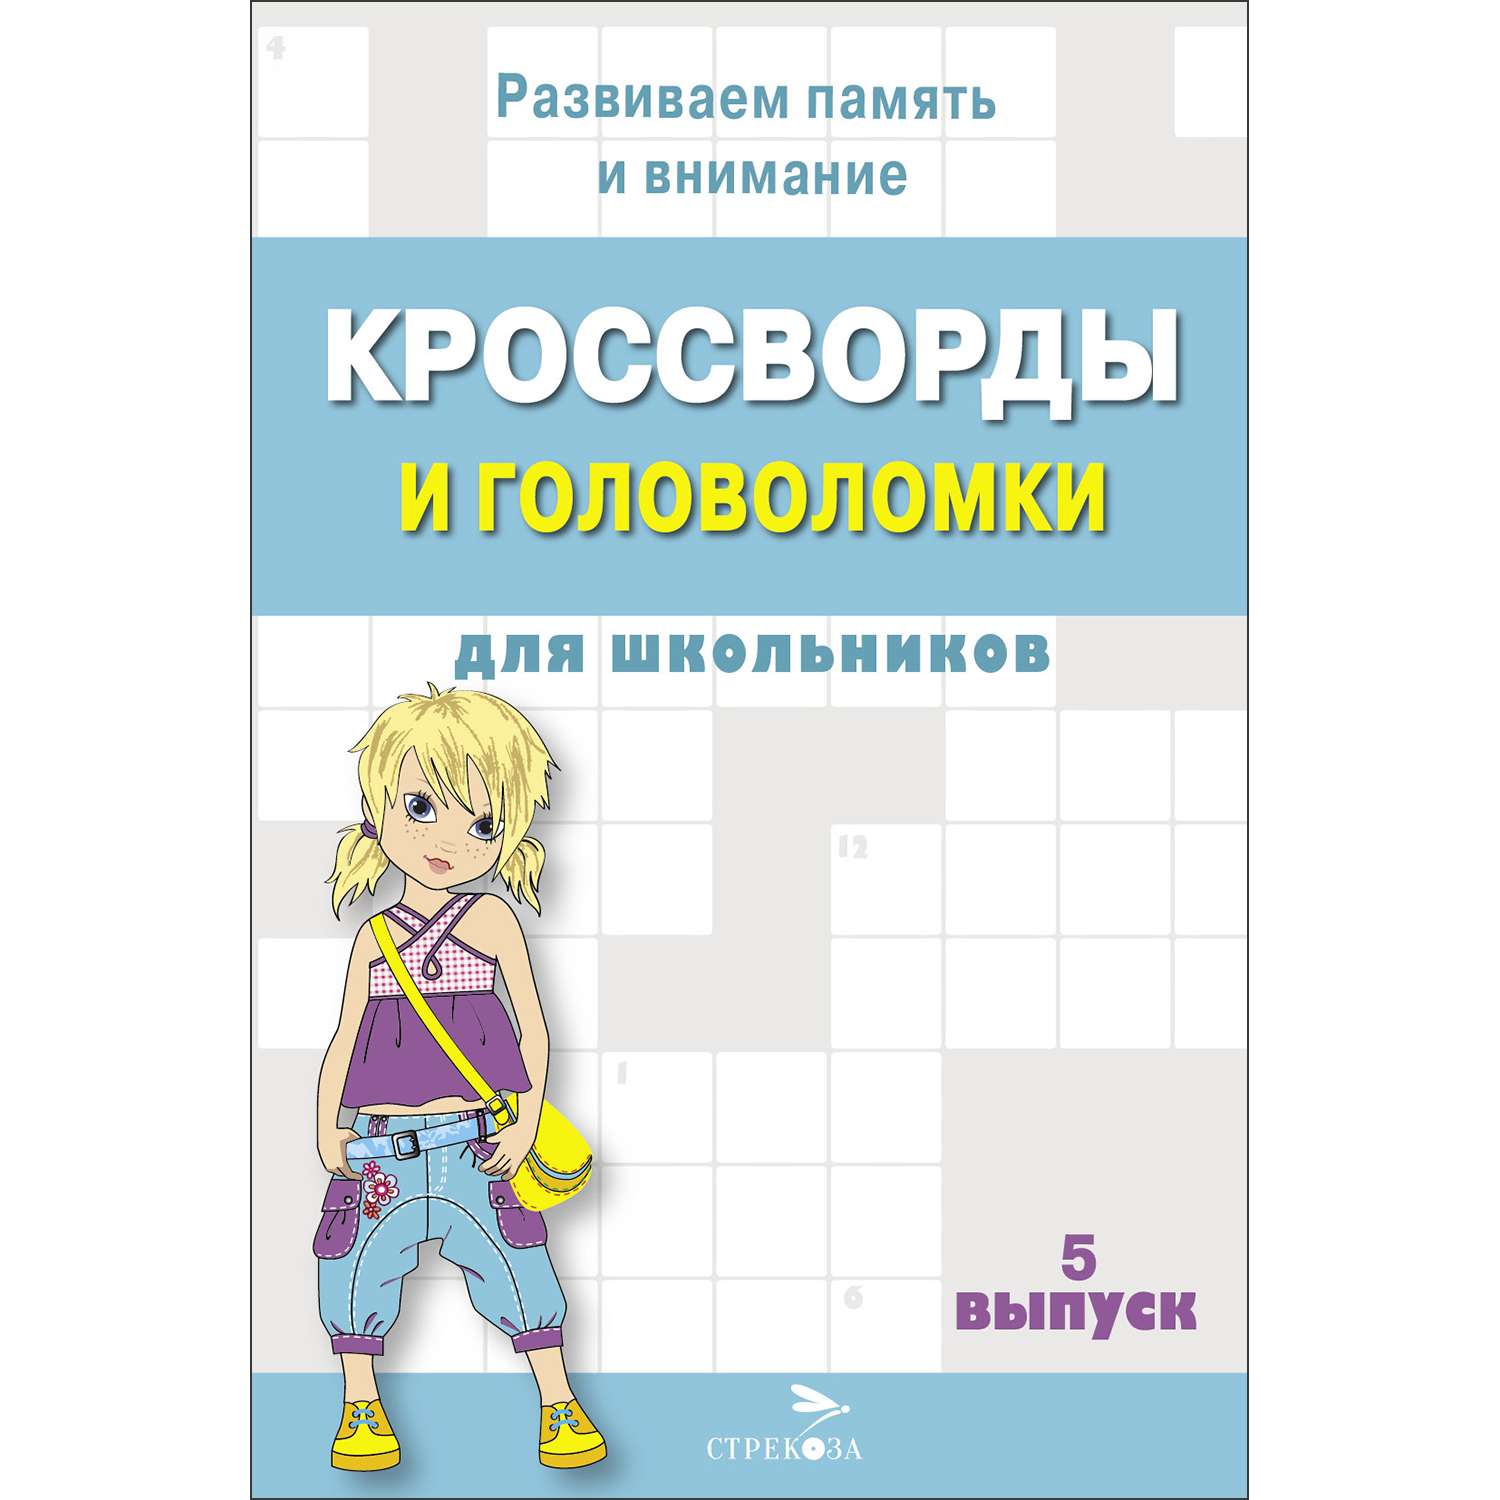 Книга Кроссворды и головоломки для школьников Выпуск 5 - фото 1